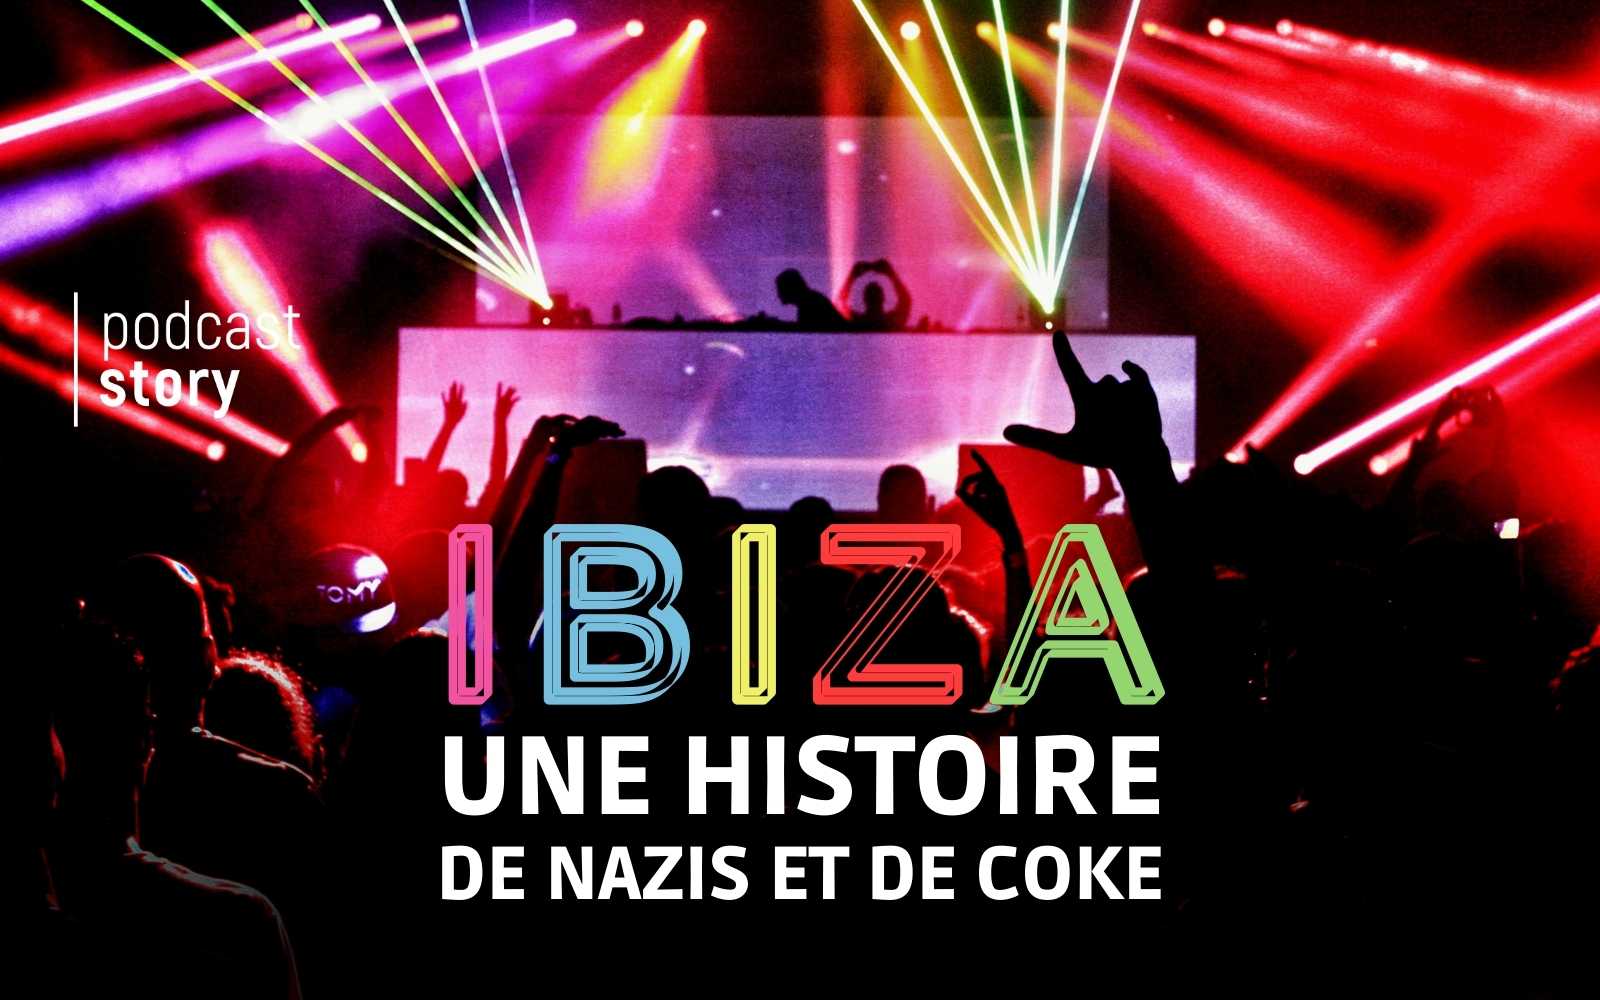 IBIZA, UNE HISTOIRE DE NAZIS ET DE COKE